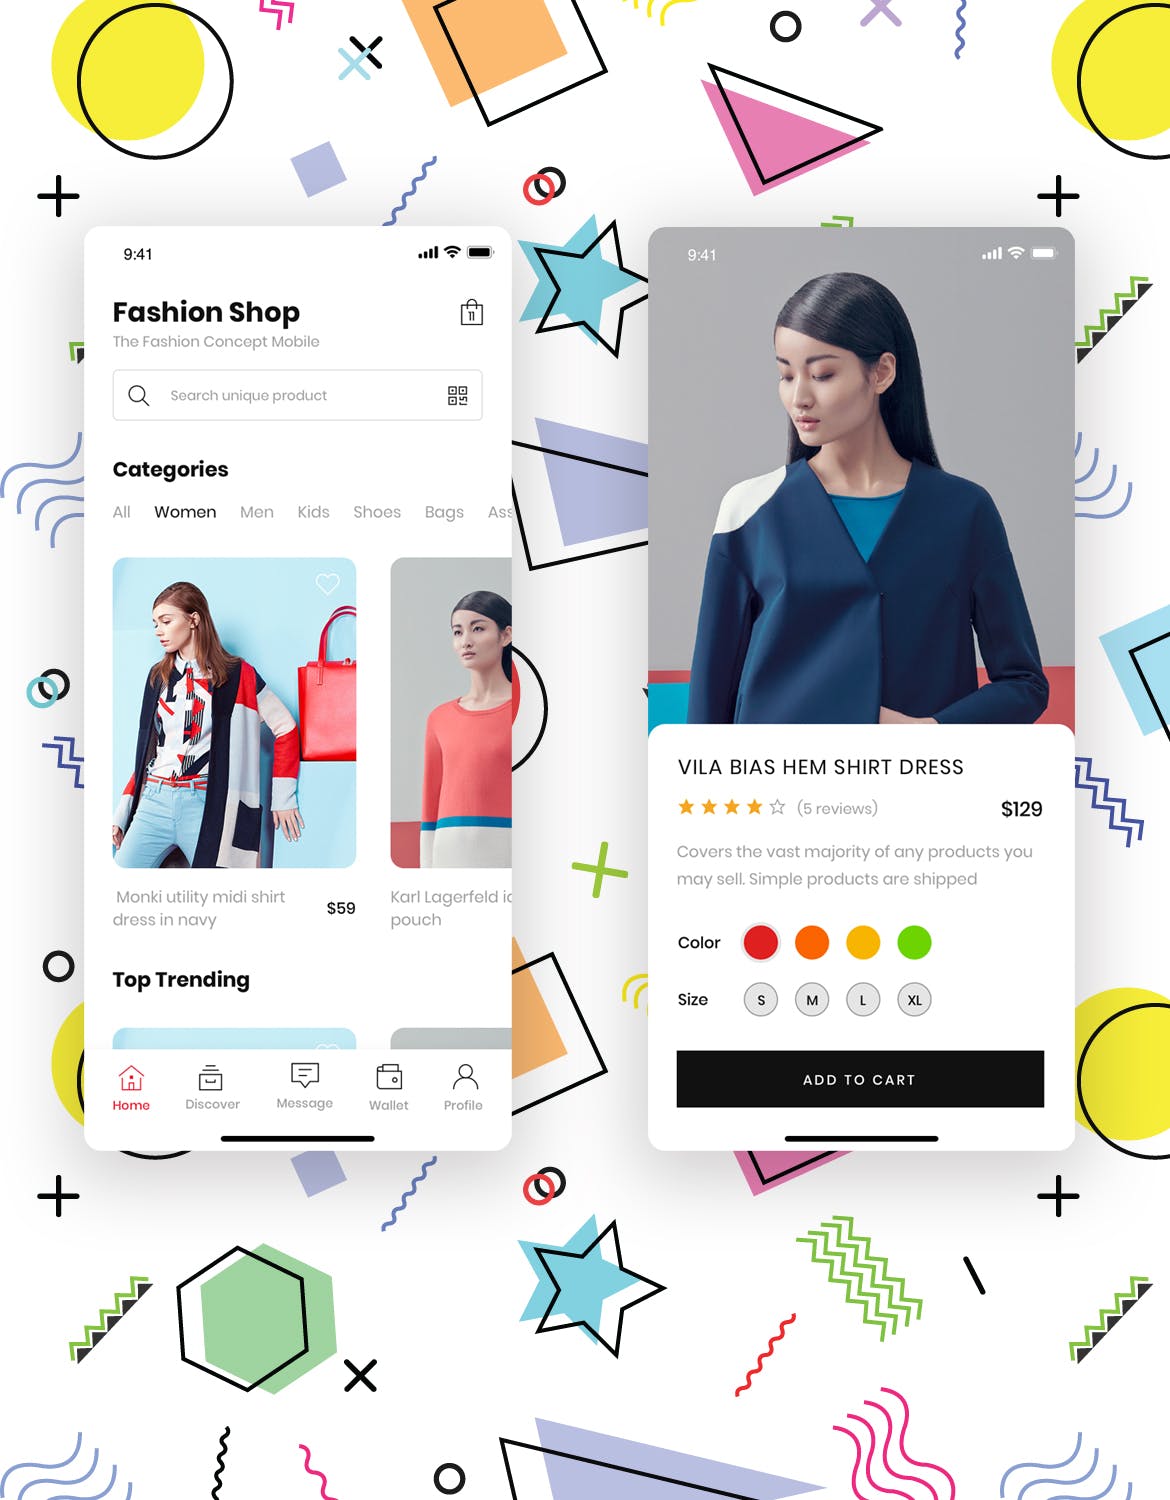 时尚服饰品牌网店APP应用UI设计非凡图库精选套件 Fashion Store Mobile App UI Kit插图(1)